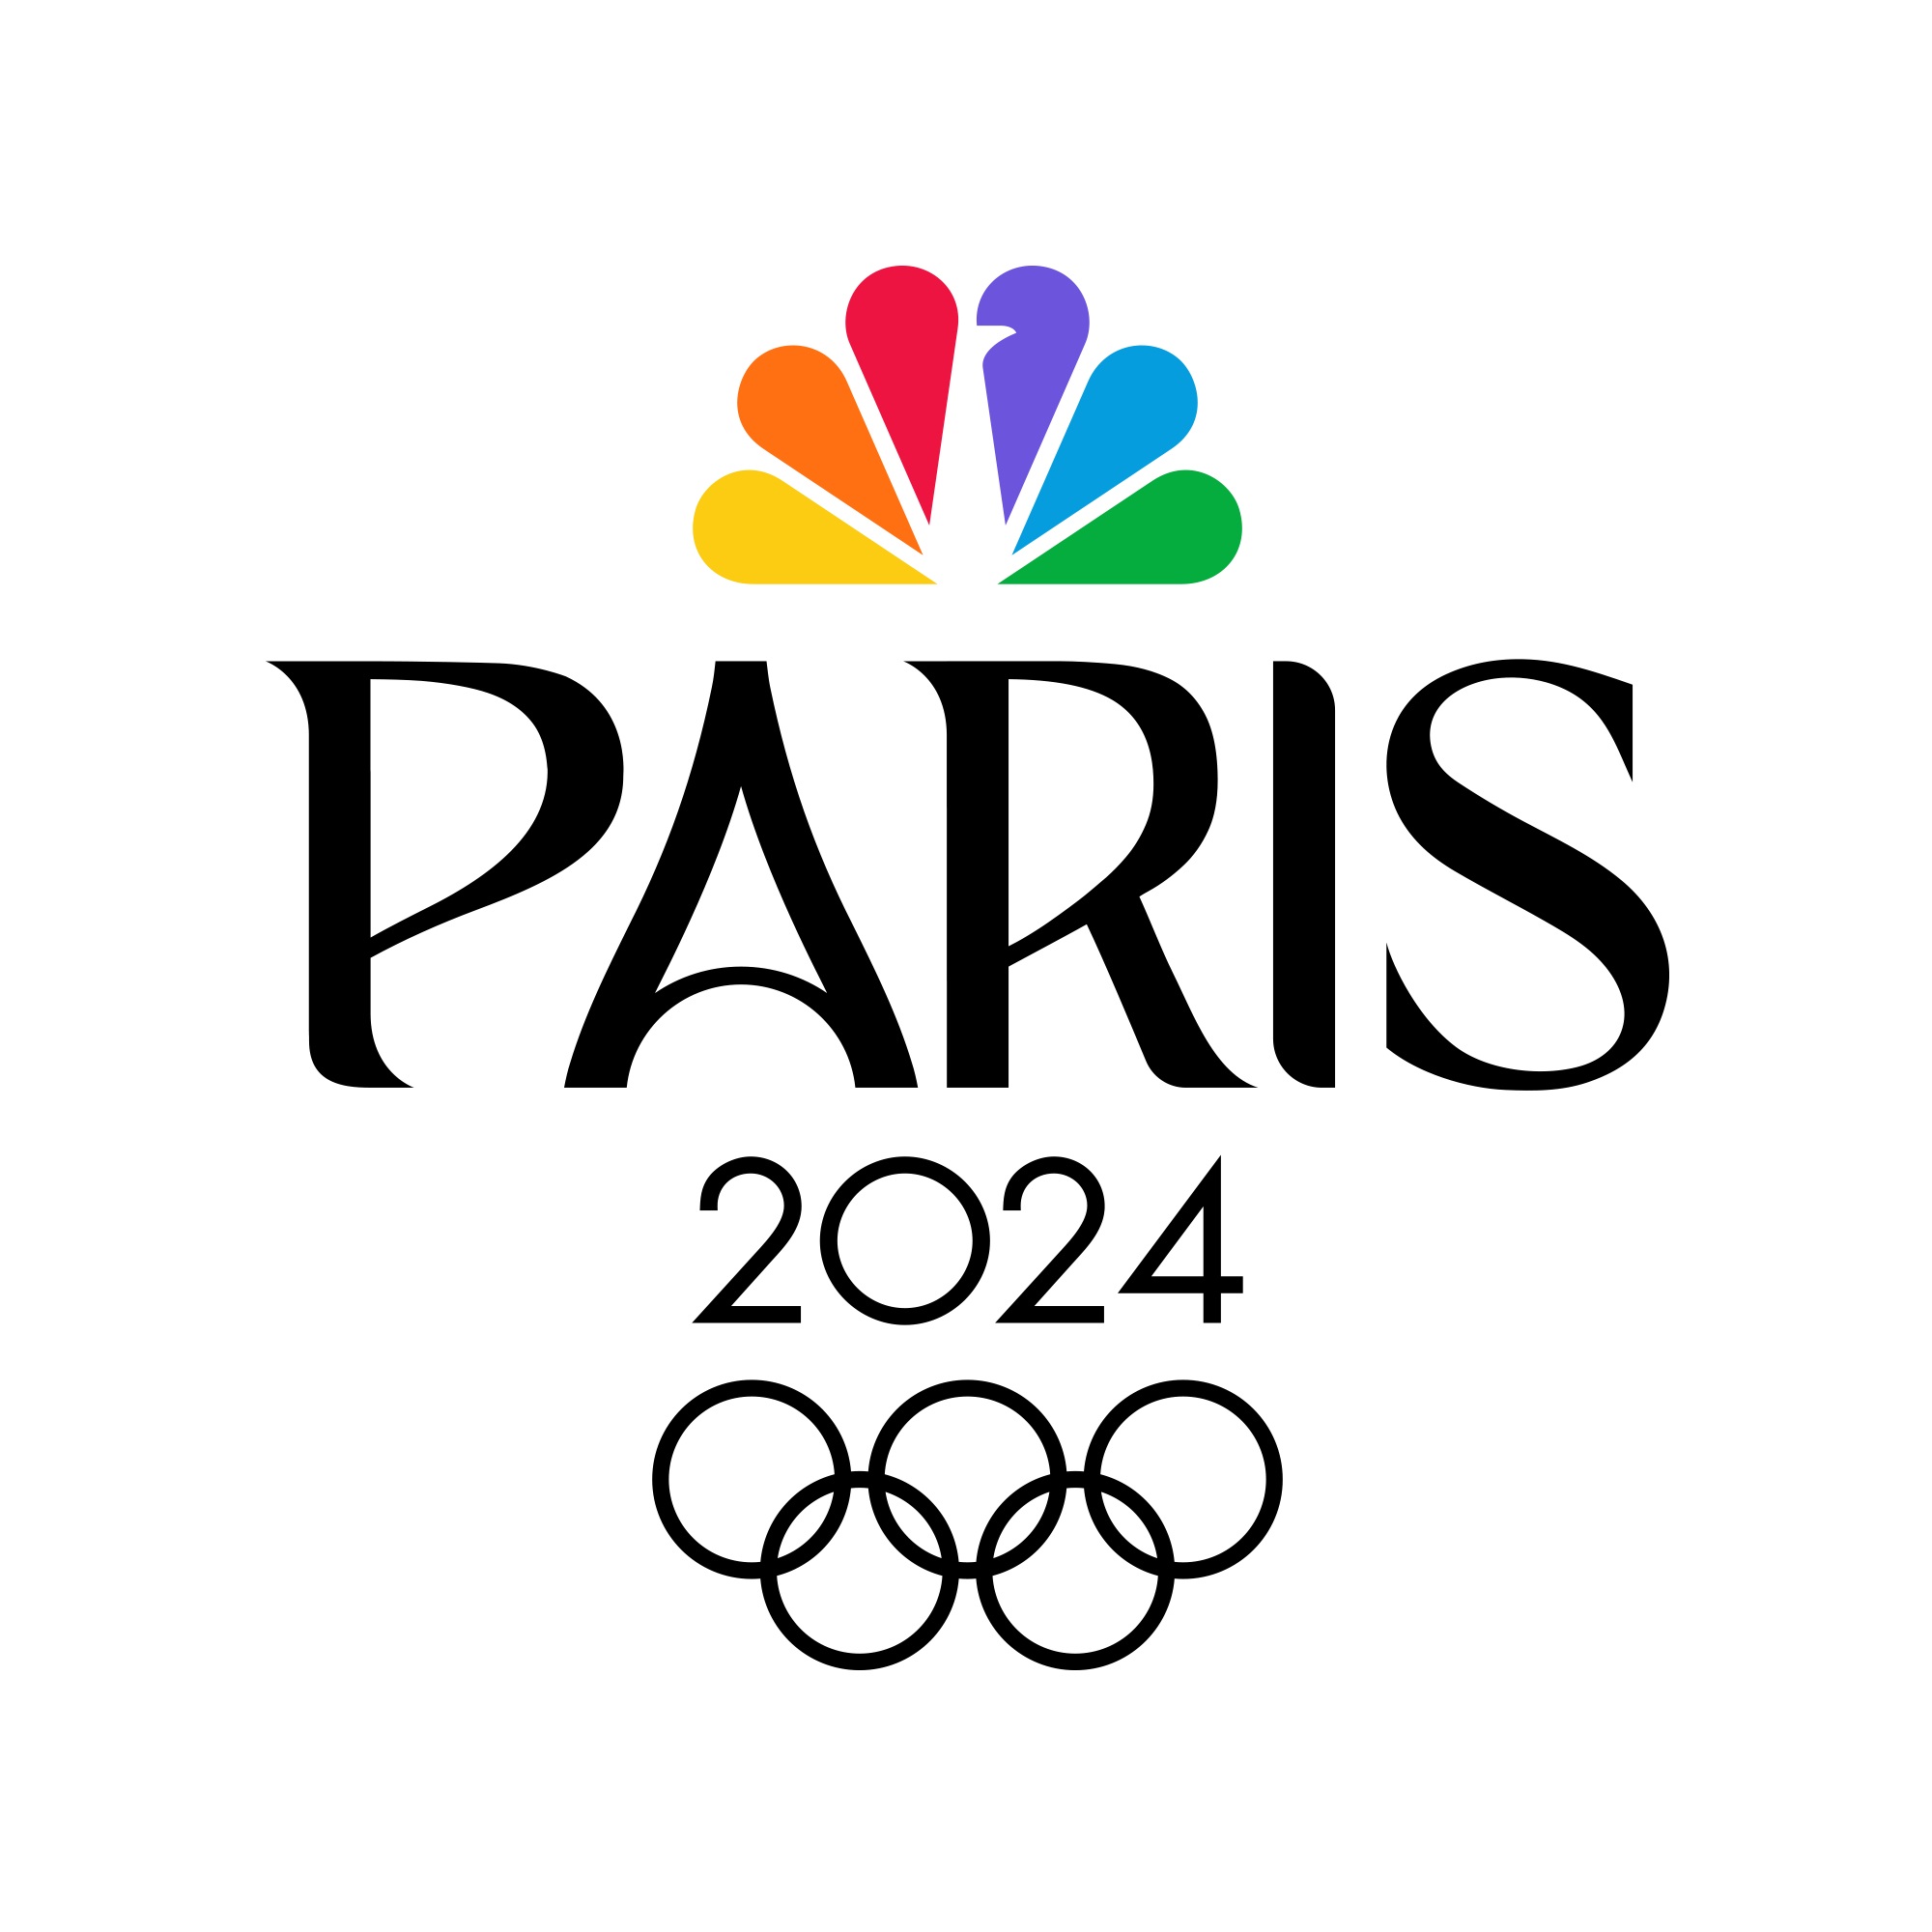 NBC Paris 2024 Olympics key artwork.